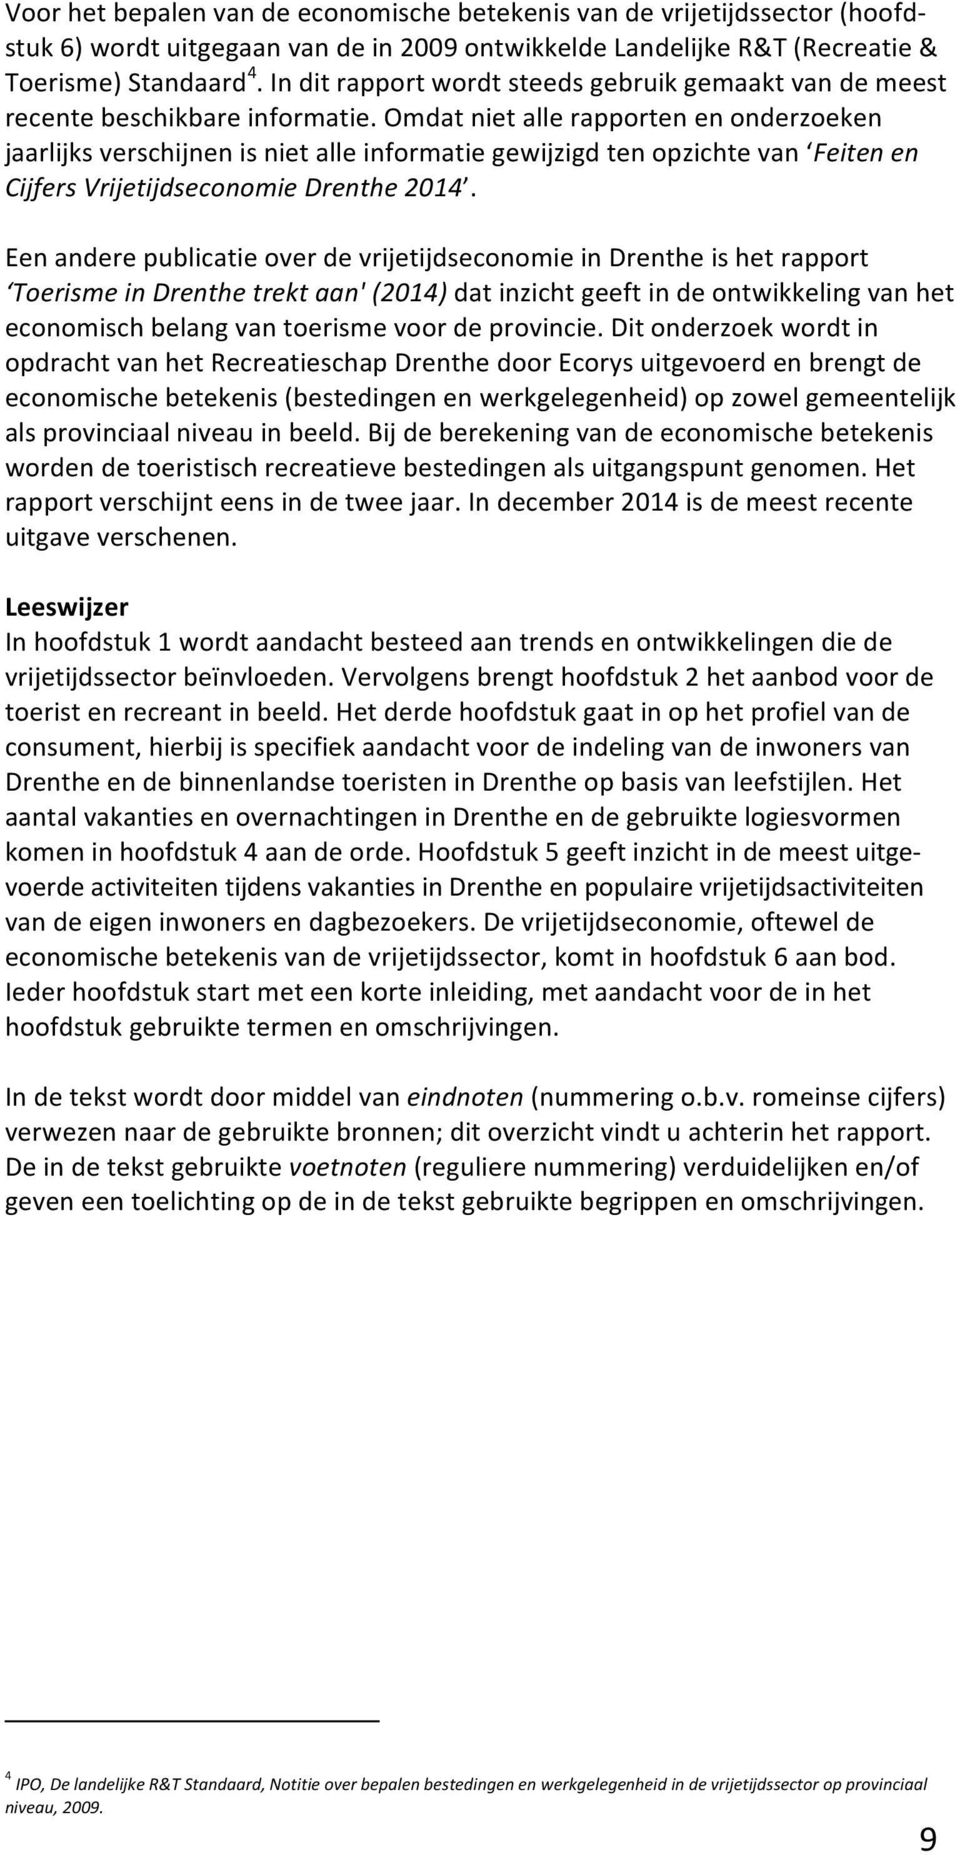 omdatnietallerapportenenonderzoeken jaarlijksverschijnenisnietalleinformatiegewijzigdtenopzichtevan Feiten"en" Cijfers"Vrijetijdseconomie"Drenthe"2014.